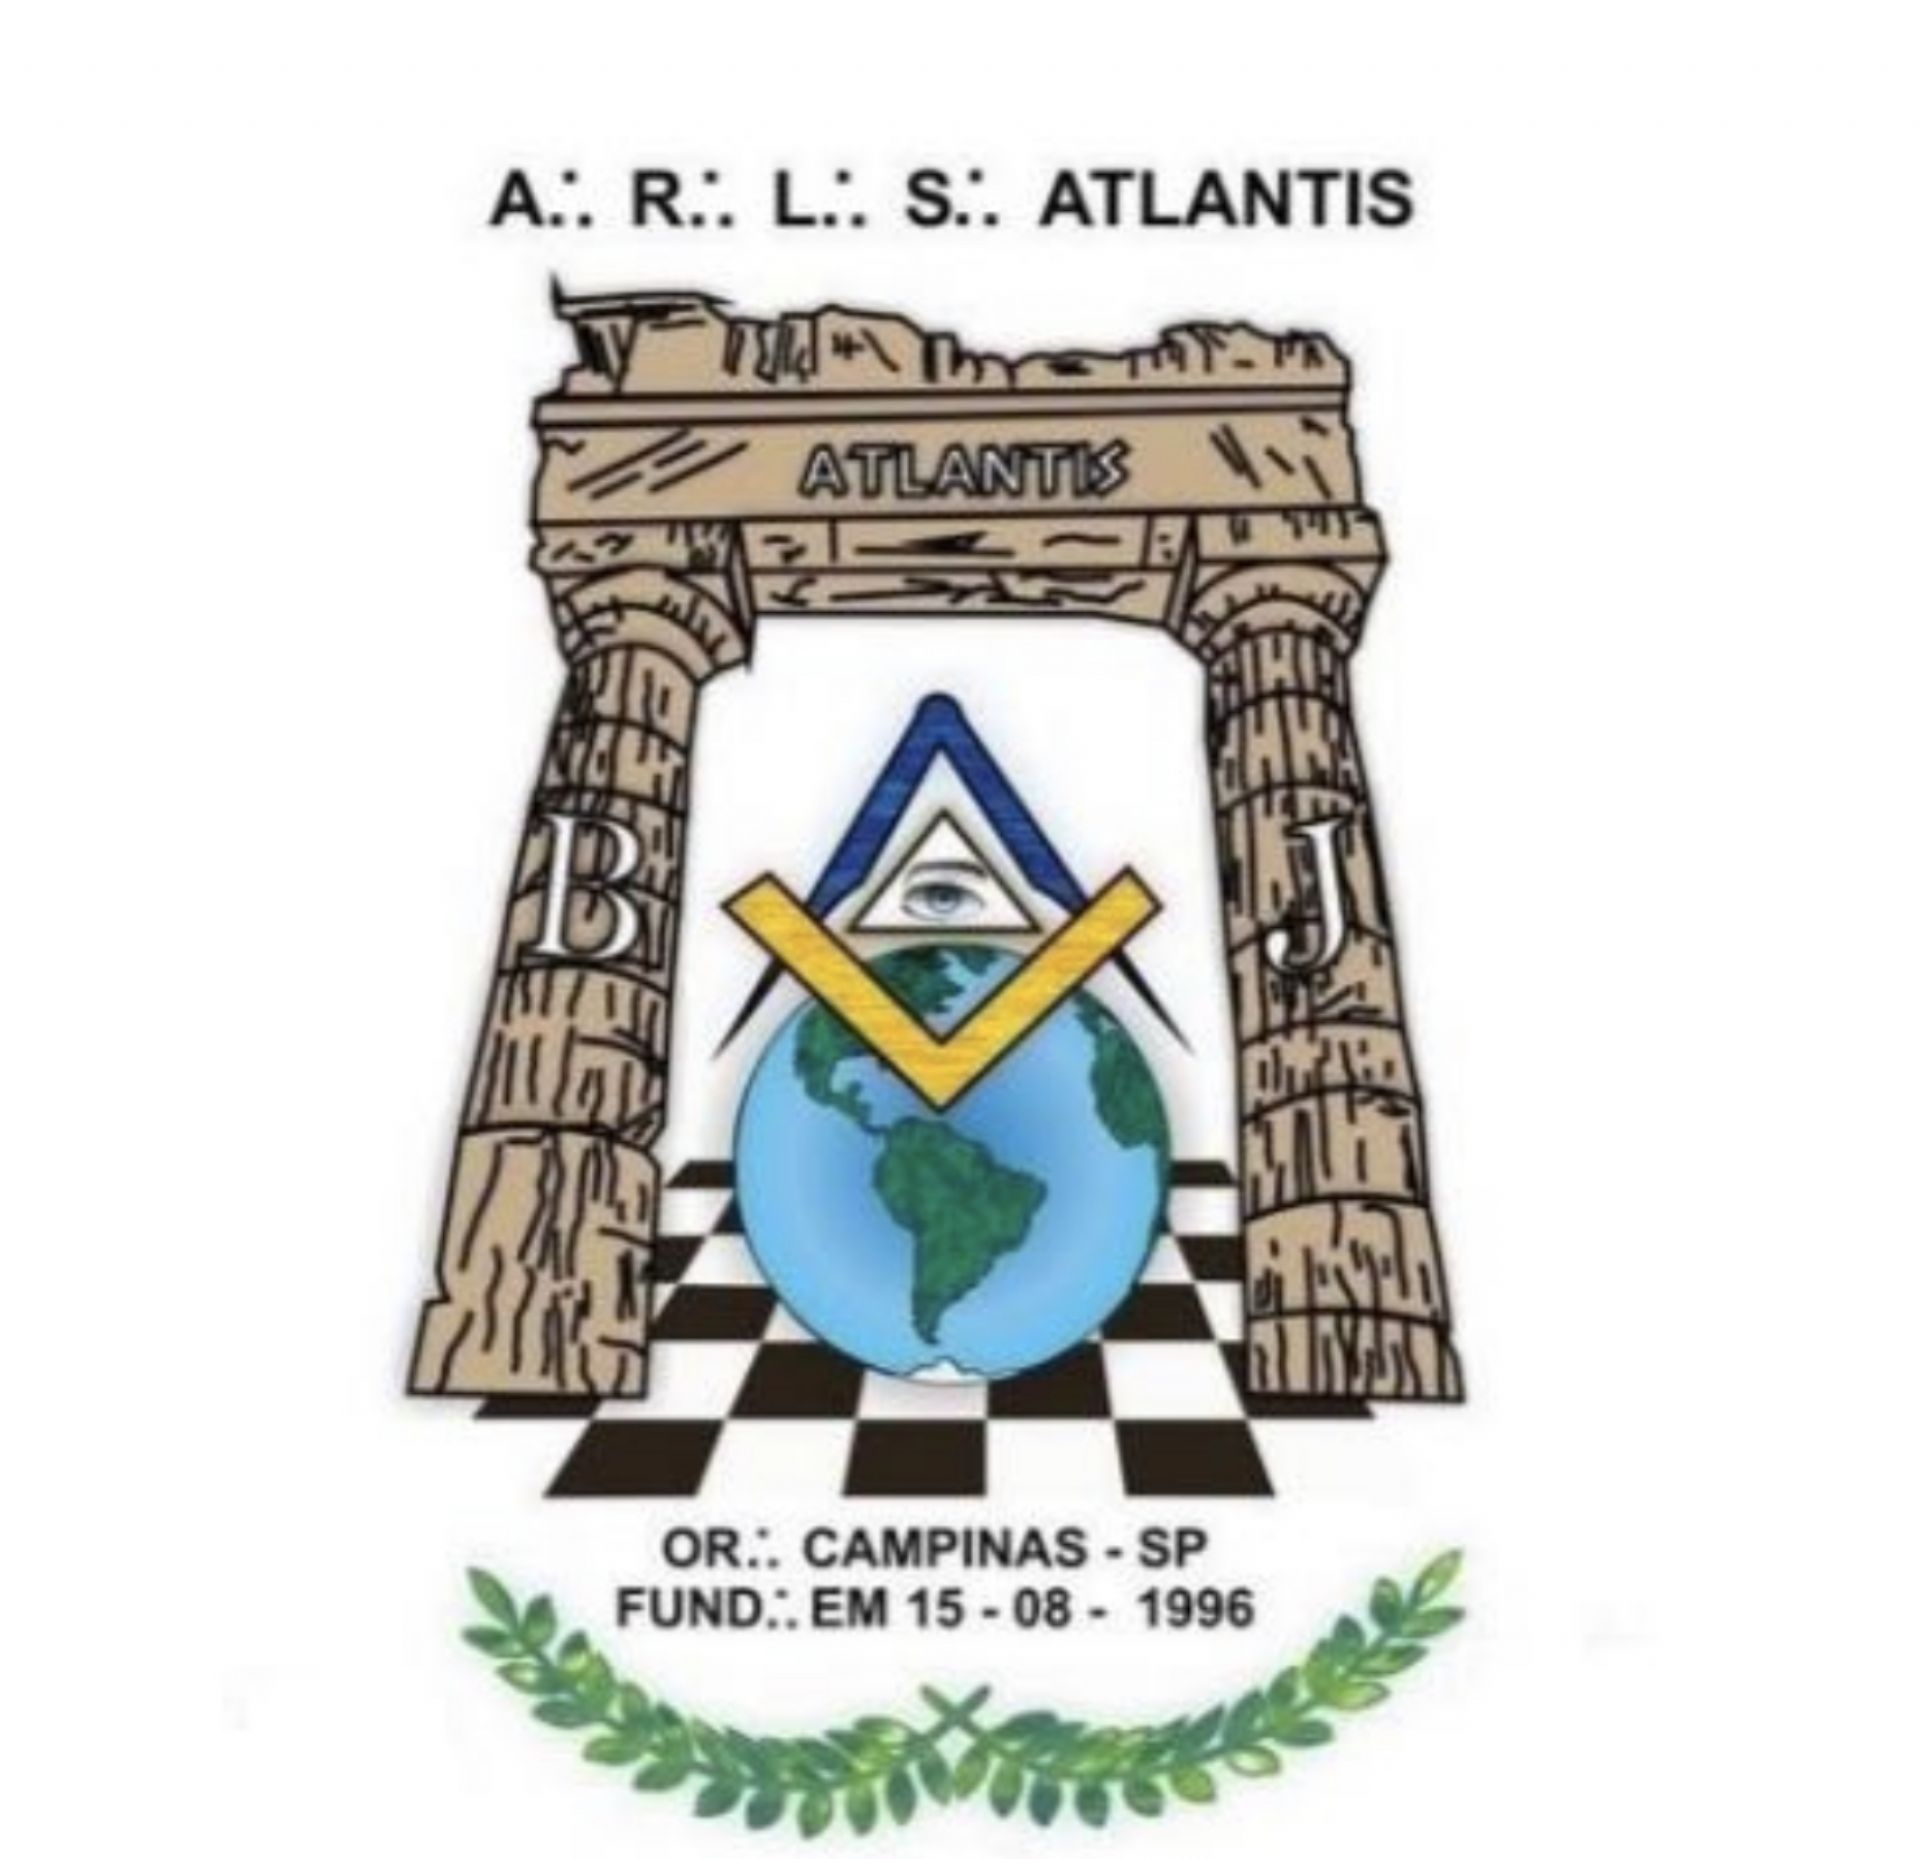  Atlantis nº 2999